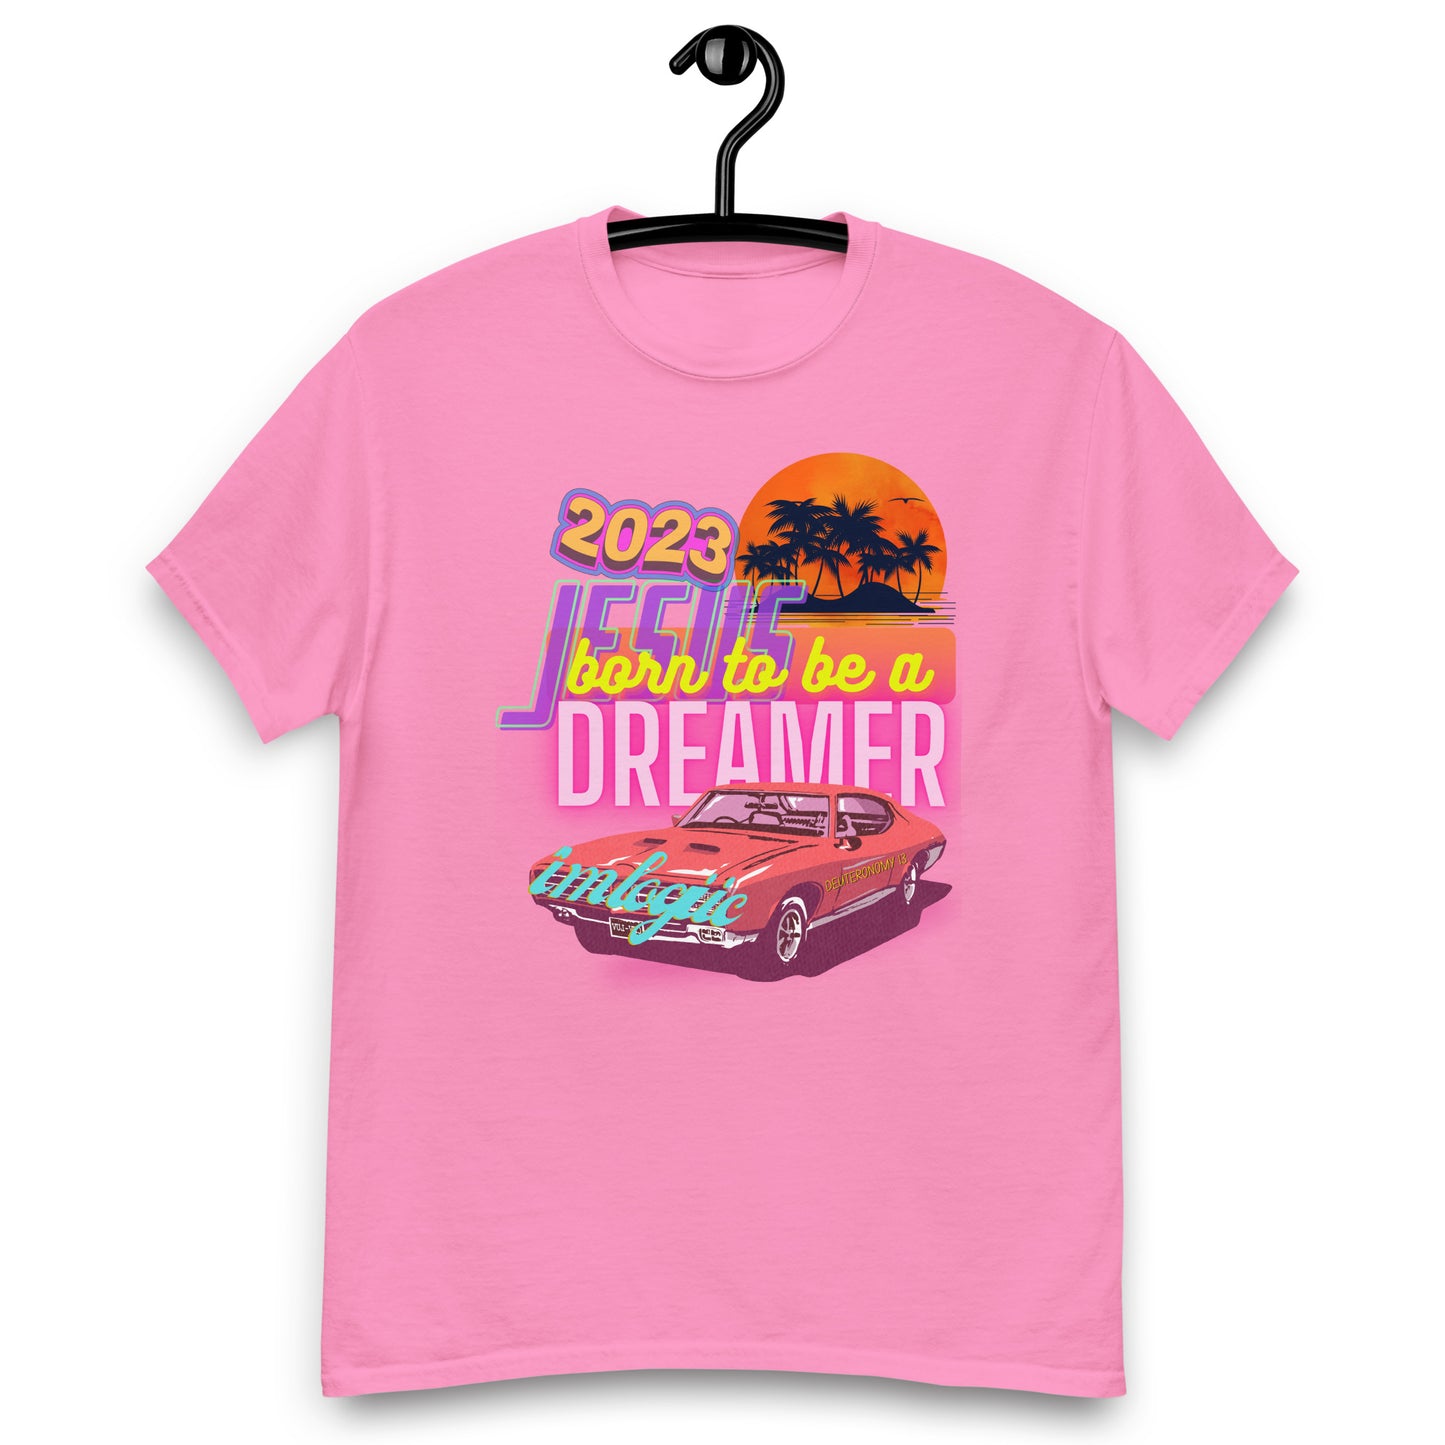 Dreamer Christian Tshirt